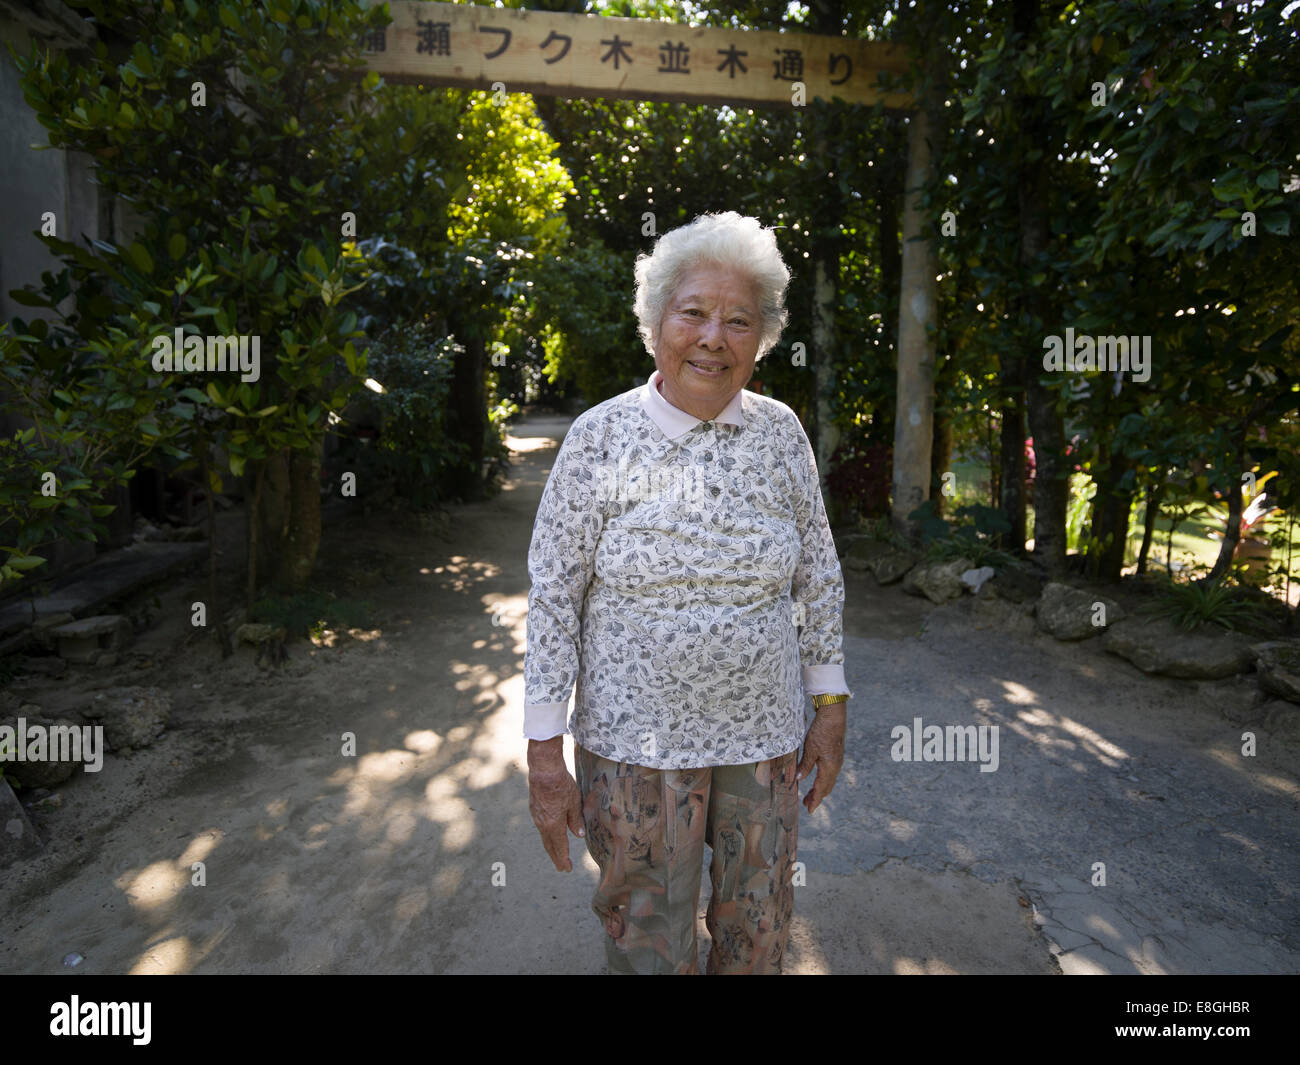 Les personnes âgées à femme Okinawan Bise Fukugi Tree Road, Motobu, Okinawa. Les femmes d'Okinawa ont l'espérance de vie la plus longue du monde Banque D'Images